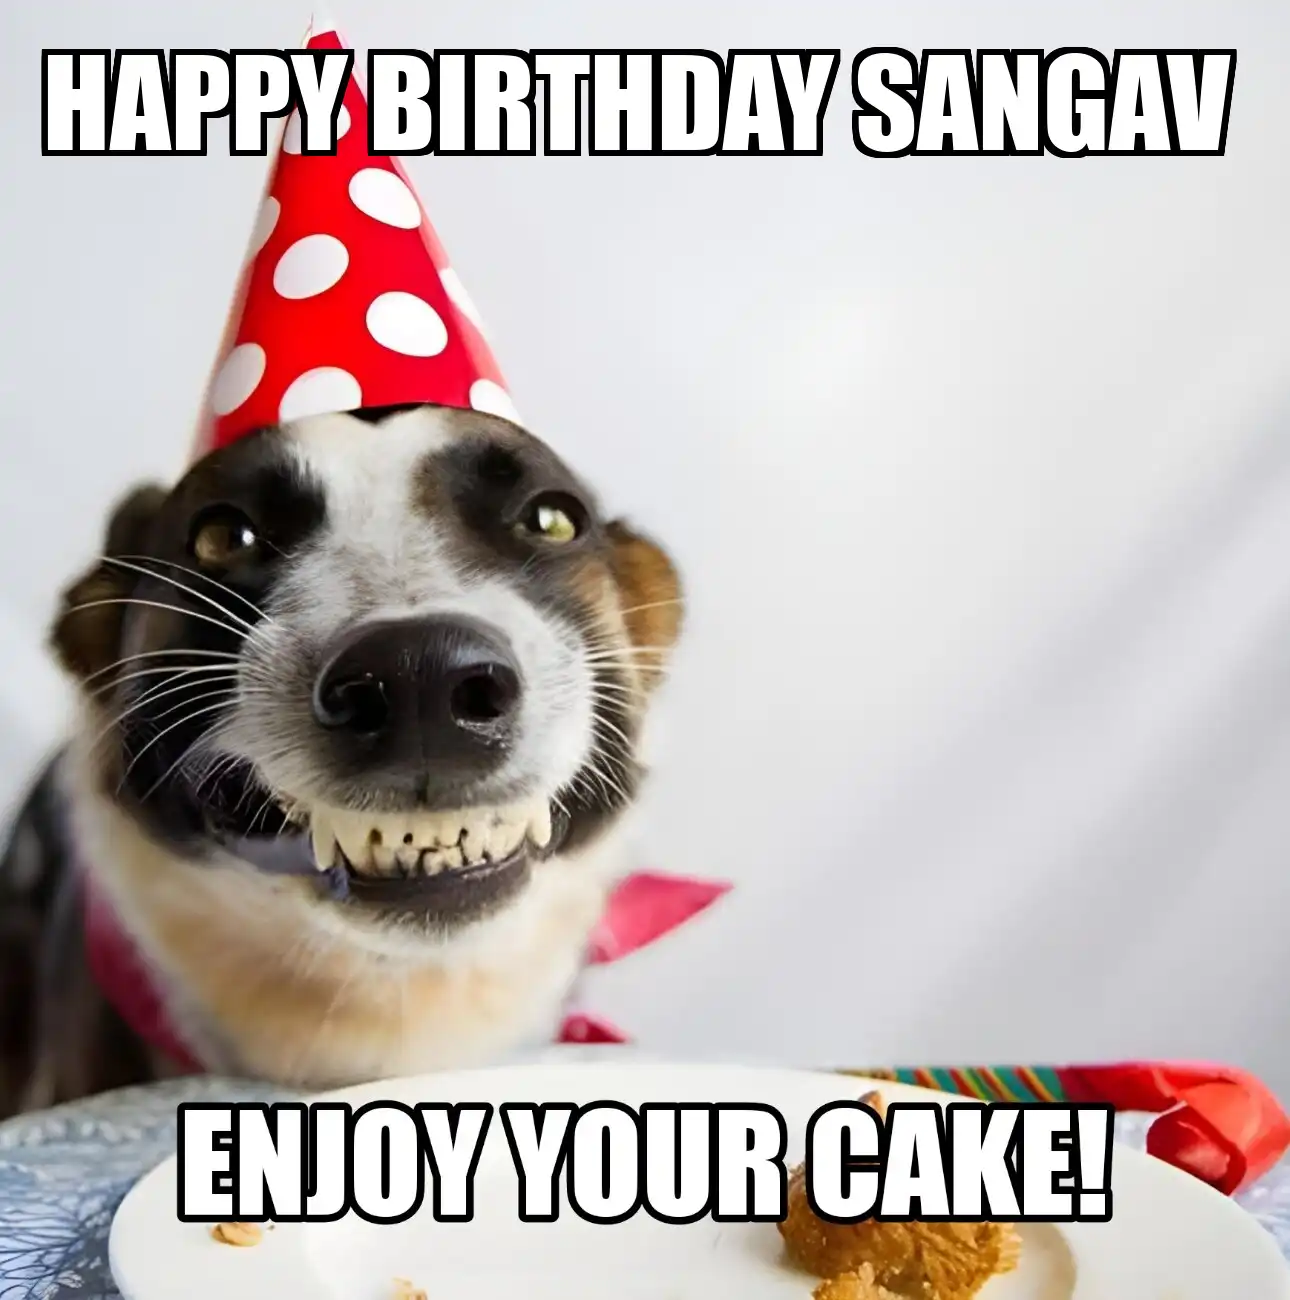 Happy Birthday Sangav Enjoy Your Cake Dog Meme